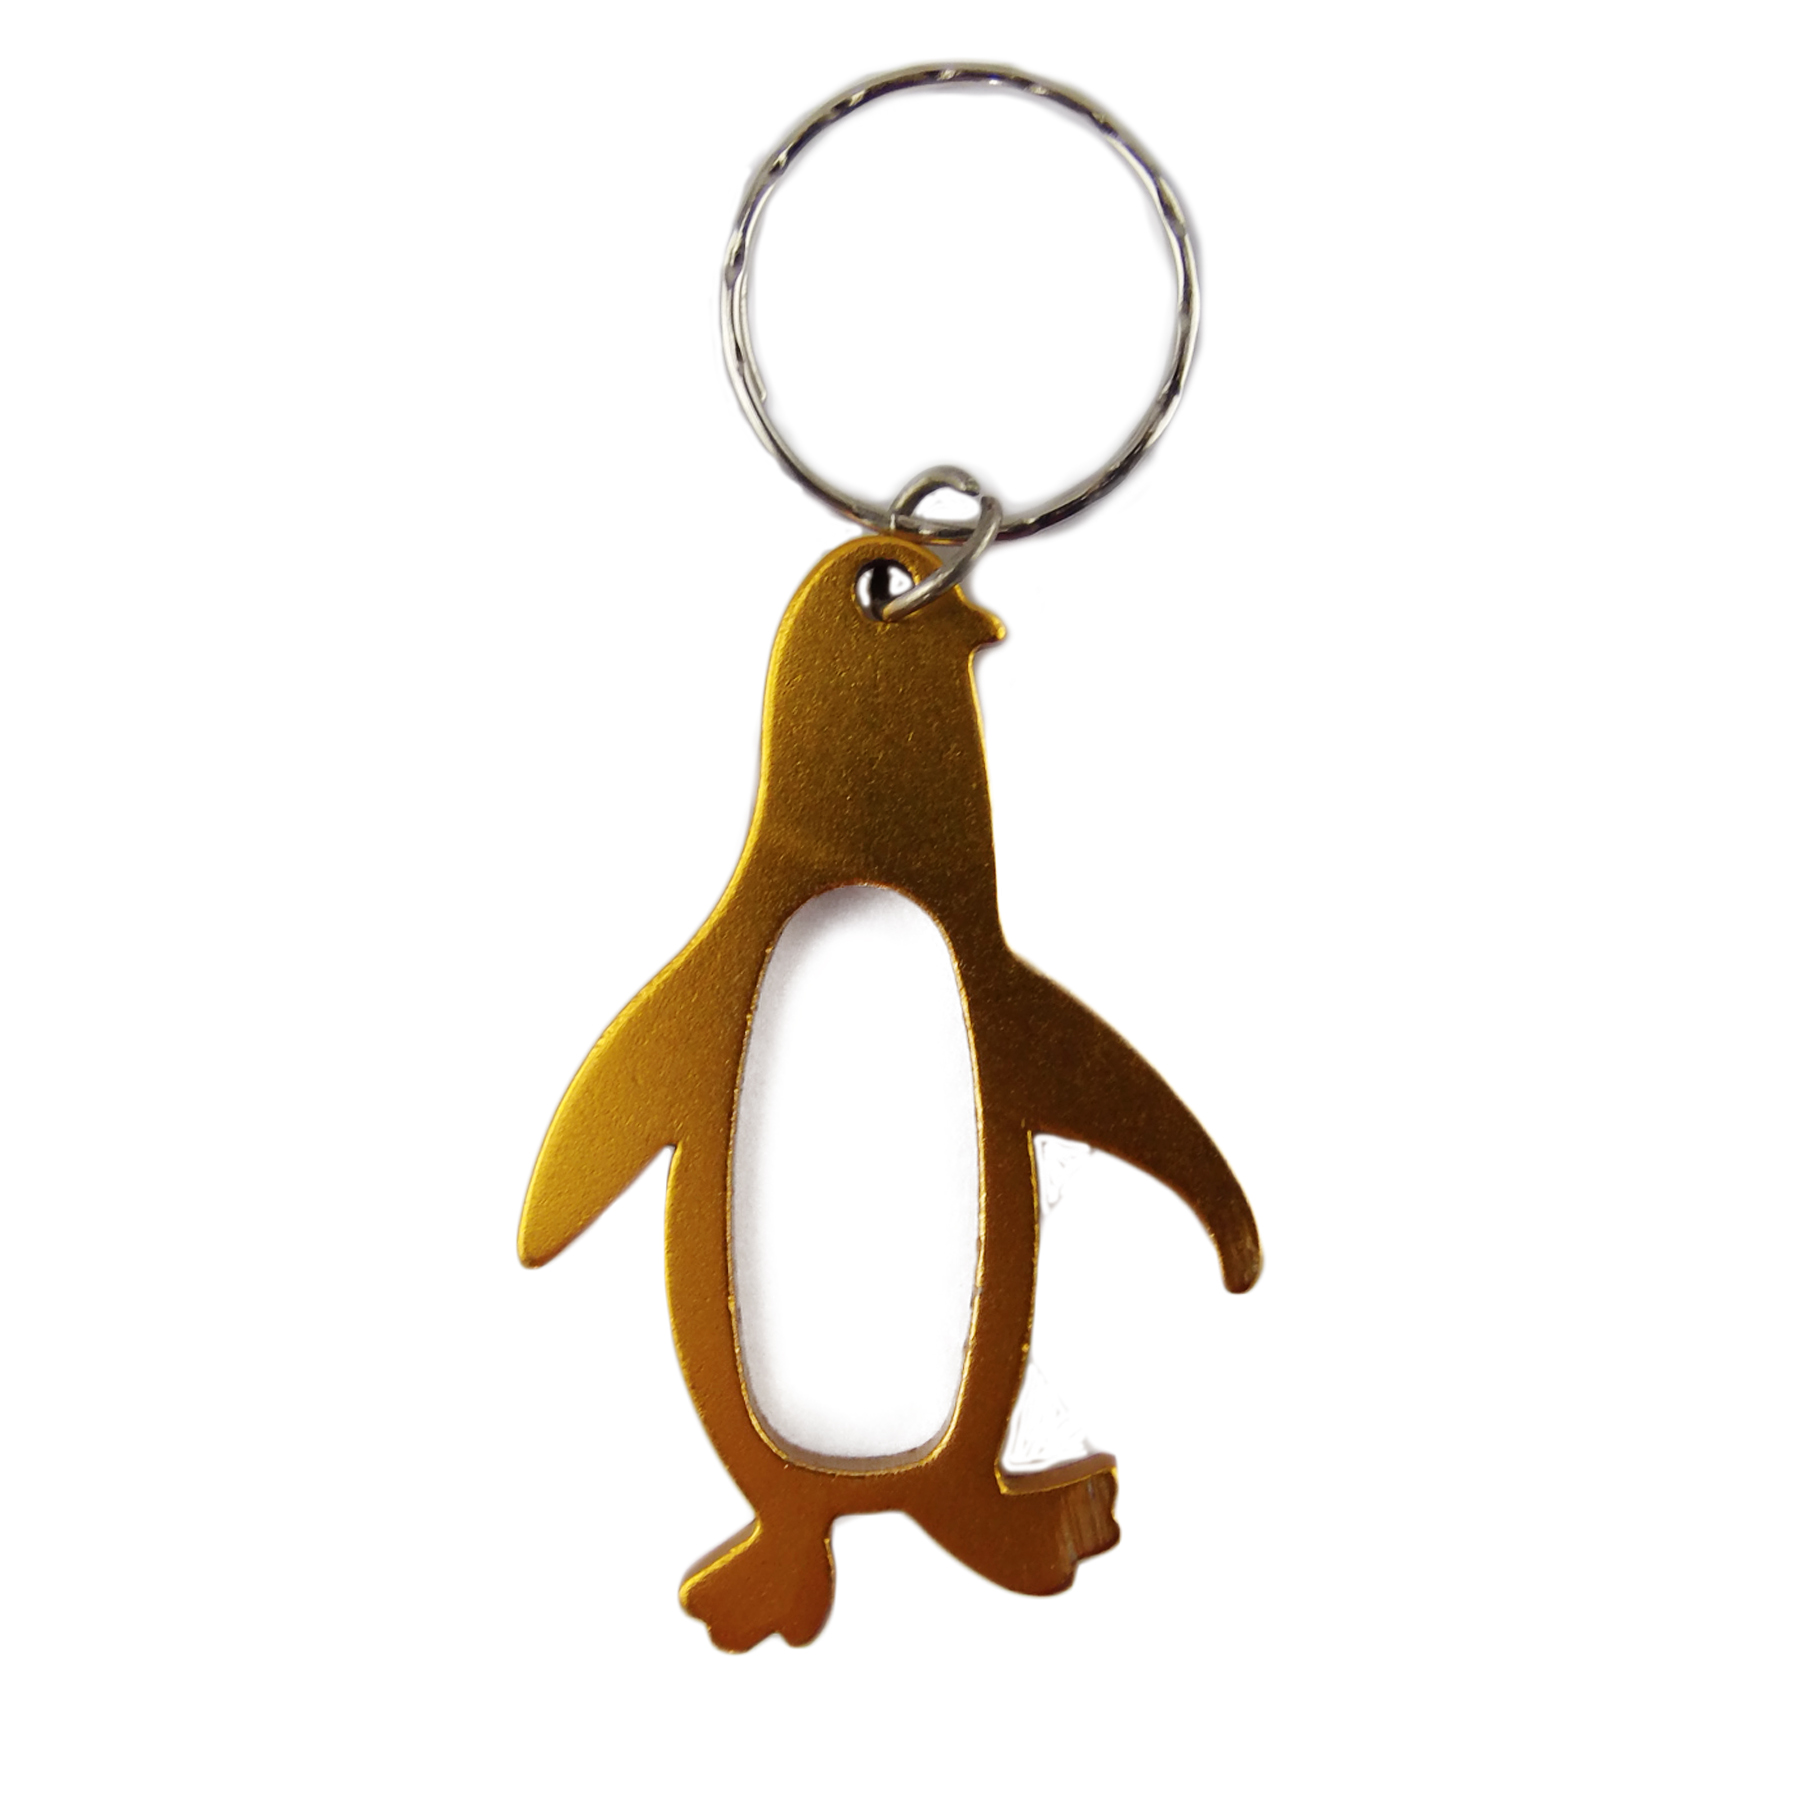 Penguin Shaped Bottle Opener Key Chain